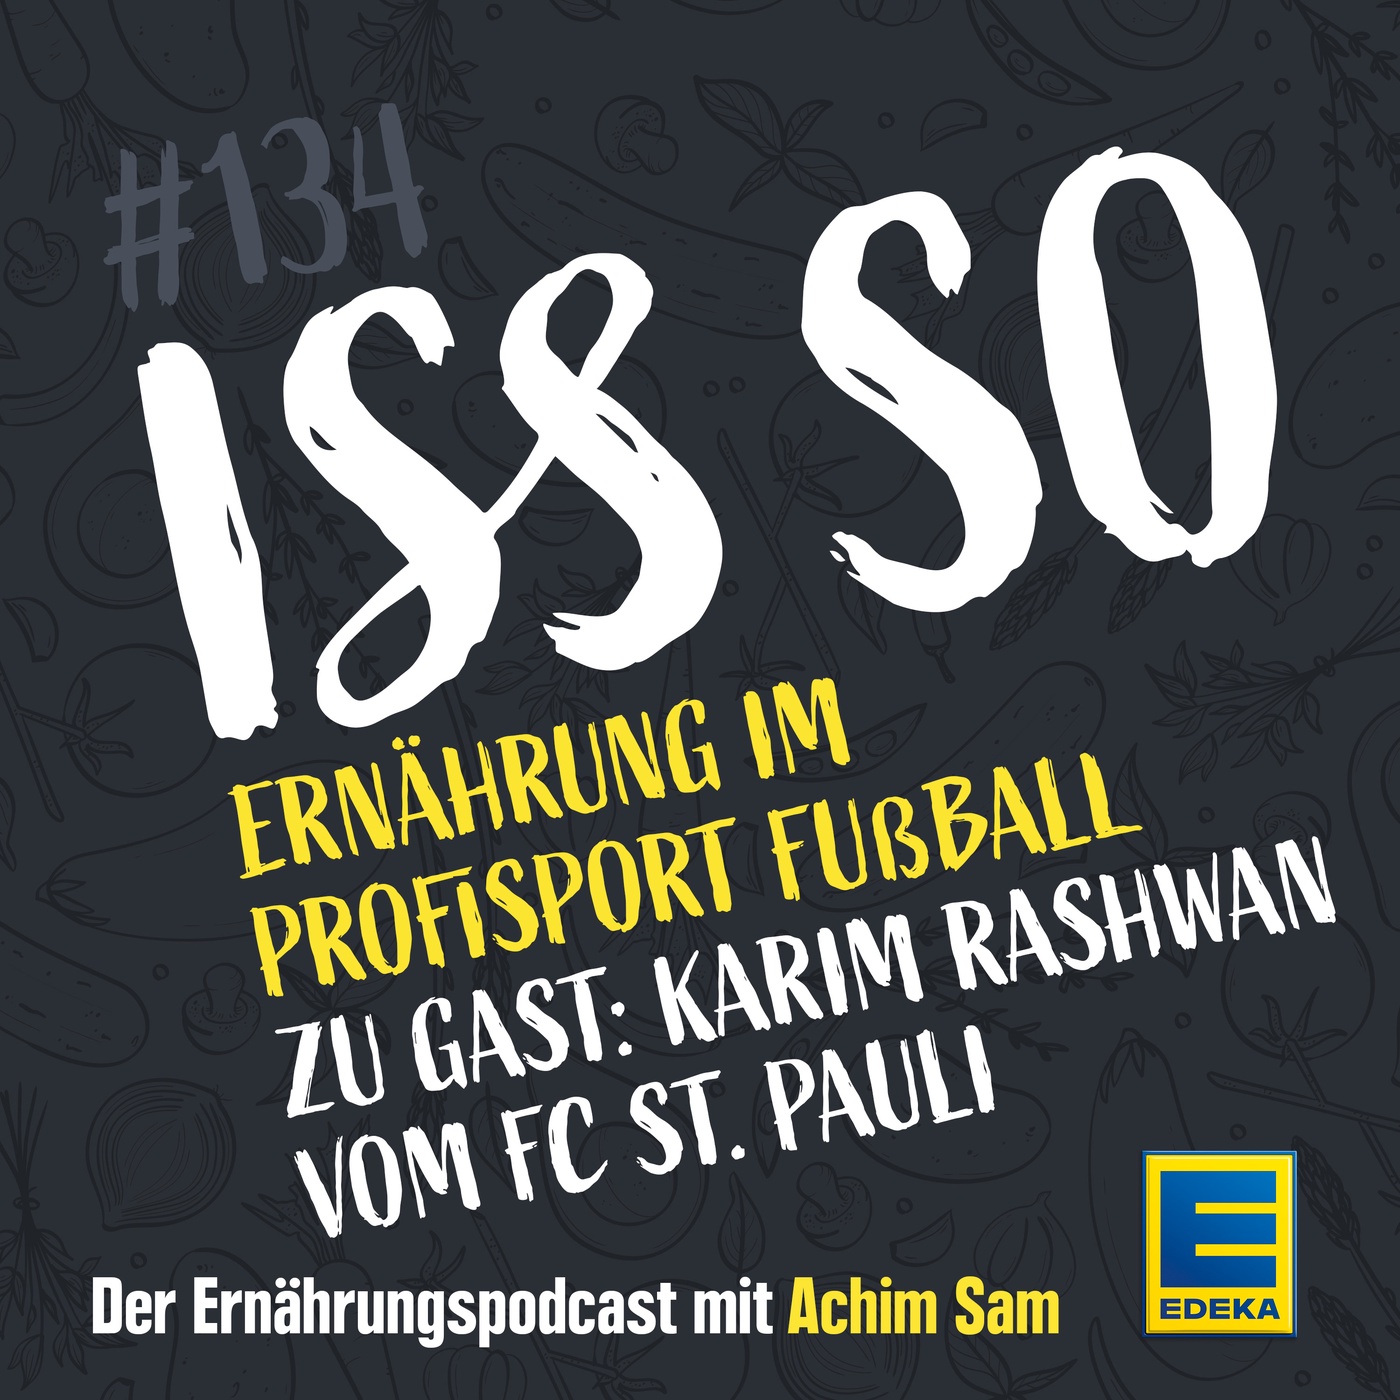 134: Ernährung im Profisport Fußball – Zu Gast: Karim Rashwan vom FC St. Pauli